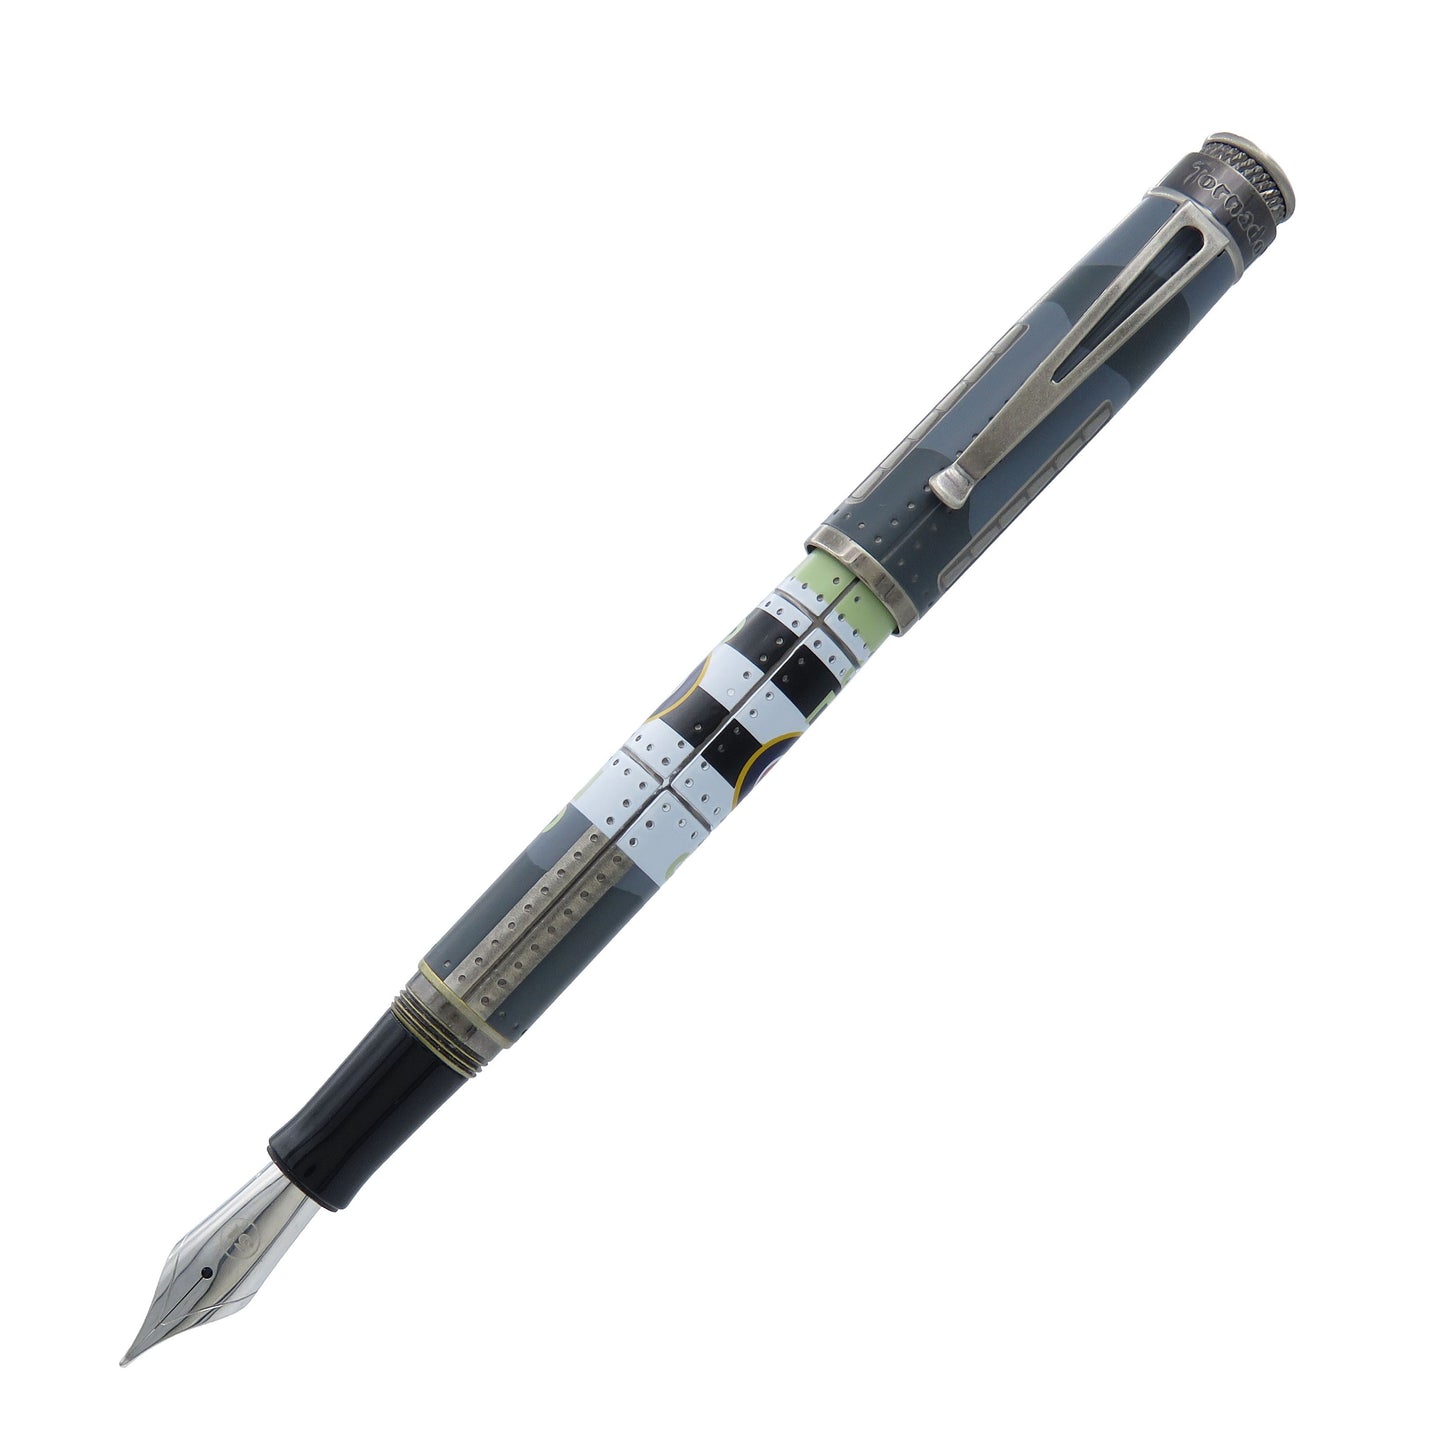 Retro 51 Fountain Pen - Spitfire (Mann Inc Exclusive)